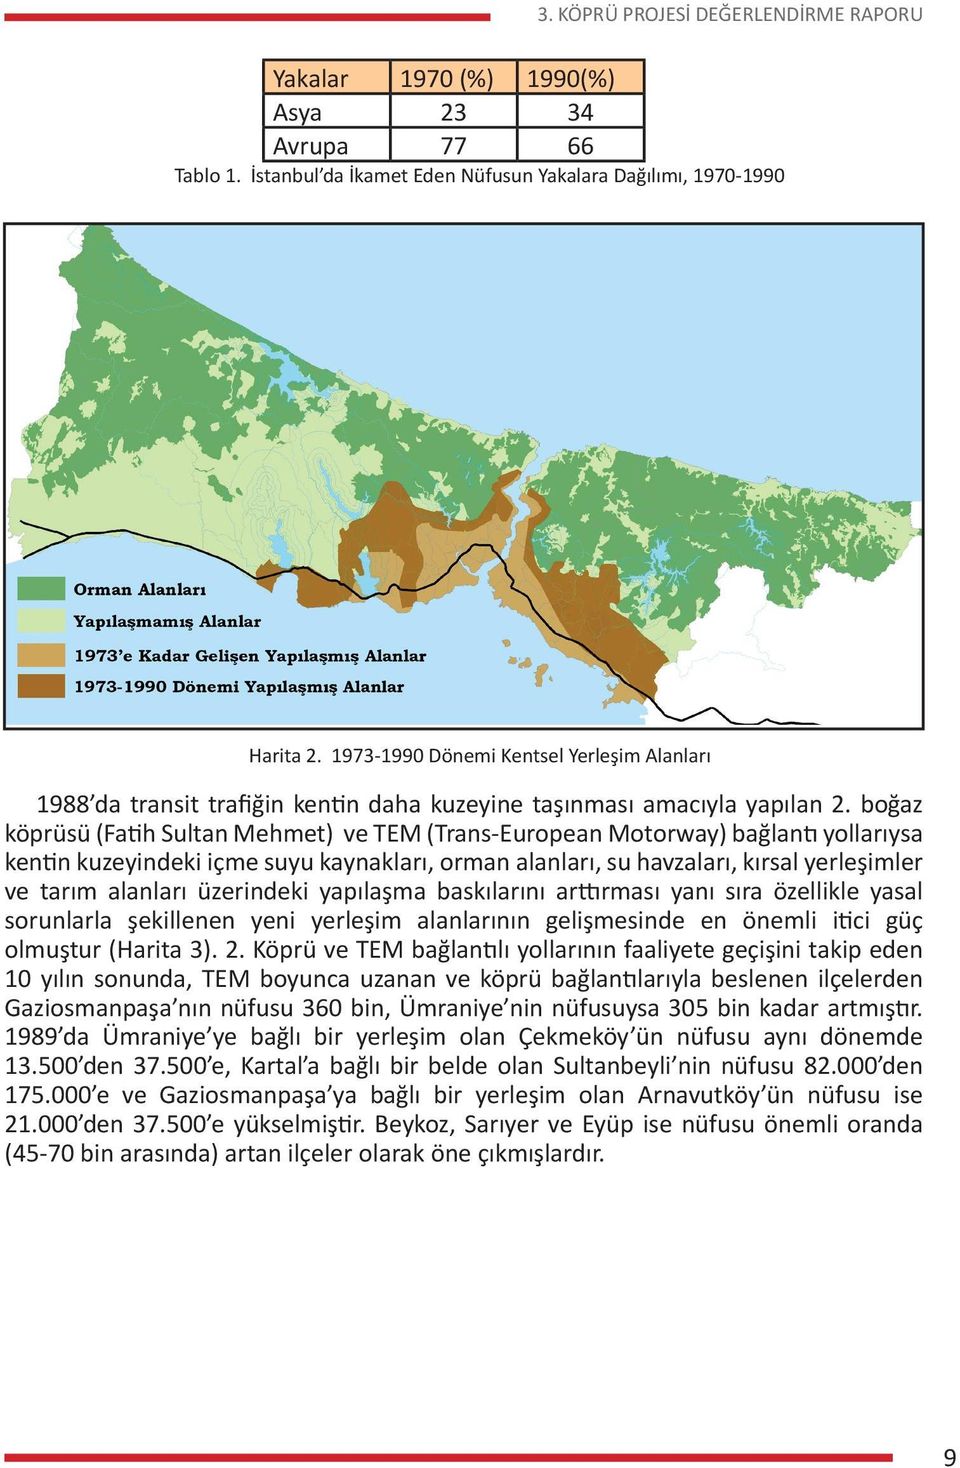 boğaz köprüsü (Fatih Sultan Mehmet) ve TEM (Trans-European Motorway) bağlantı yollarıysa kentin kuzeyindeki içme suyu kaynakları, orman alanları, su havzaları, kırsal yerleşimler ve tarım alanları